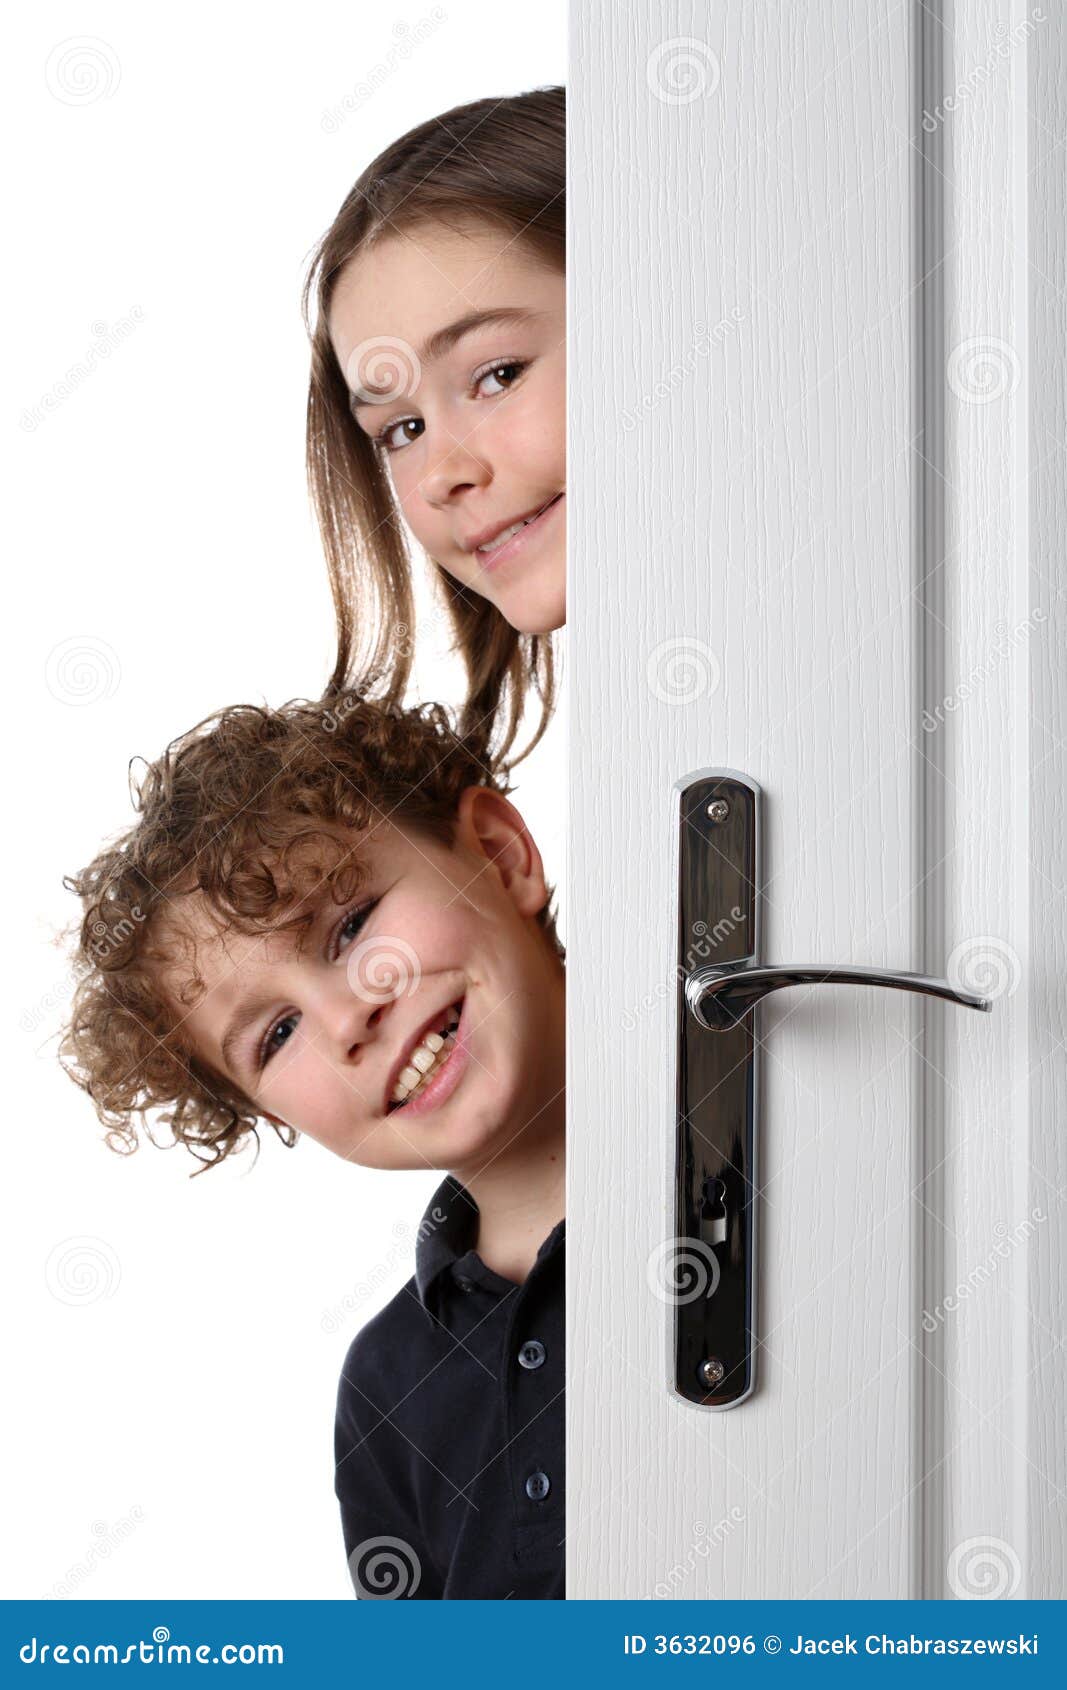 Мальчик и дверь открылась. Ребенок выглядывает из за двери. Мальчик у двери. Ребенок заглядывает в дверь. Дверь для детей.